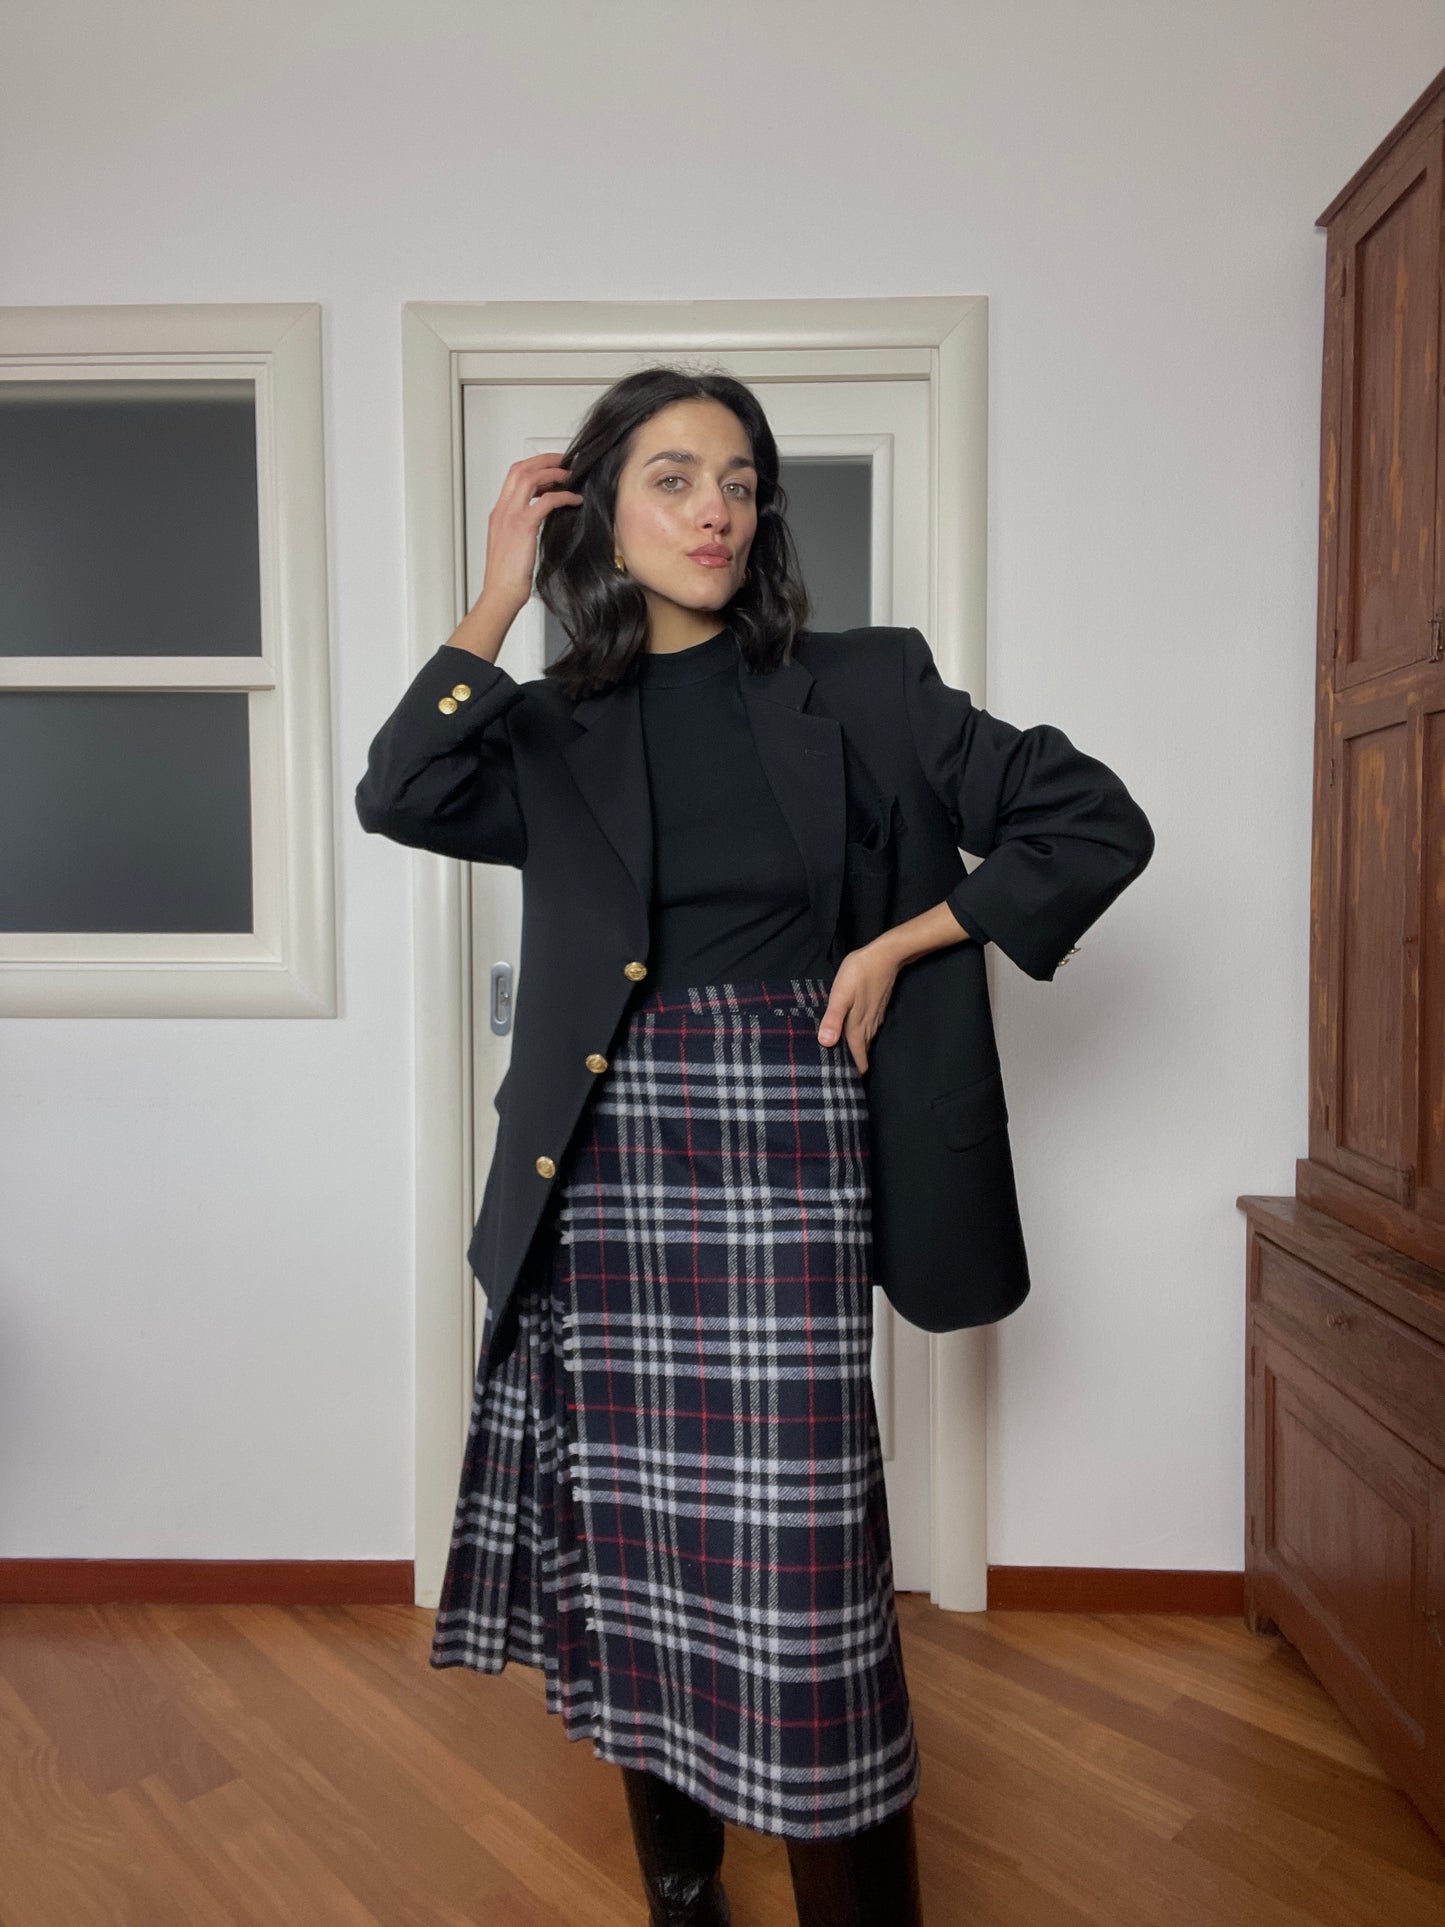 The Burberry wool tartan skirt